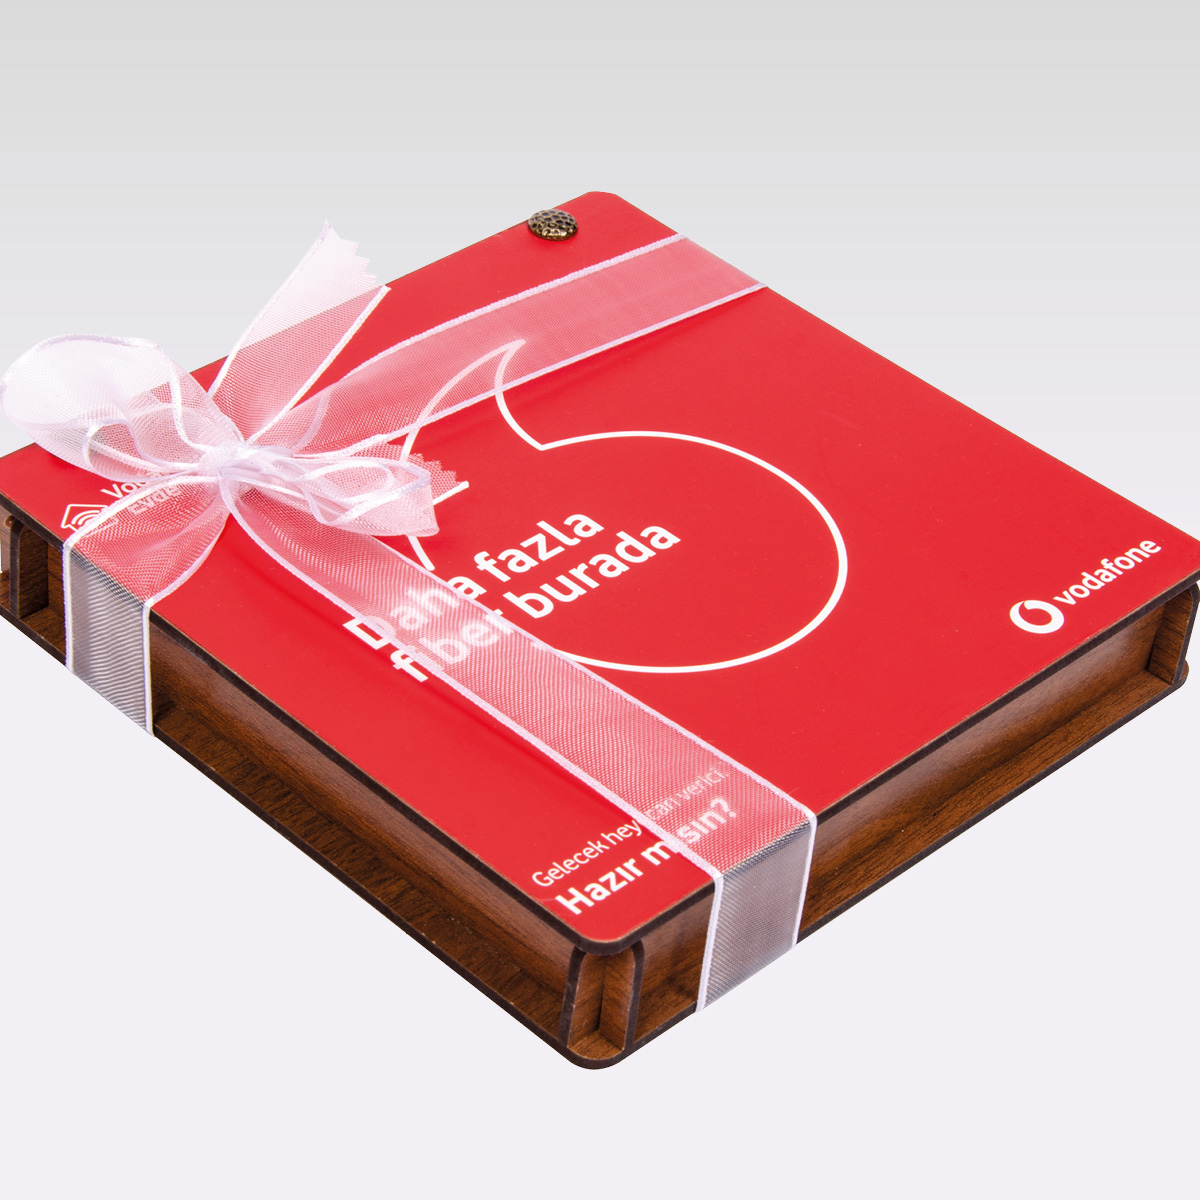 Coffret En Bois | 27 carrés chocolats personnalisés